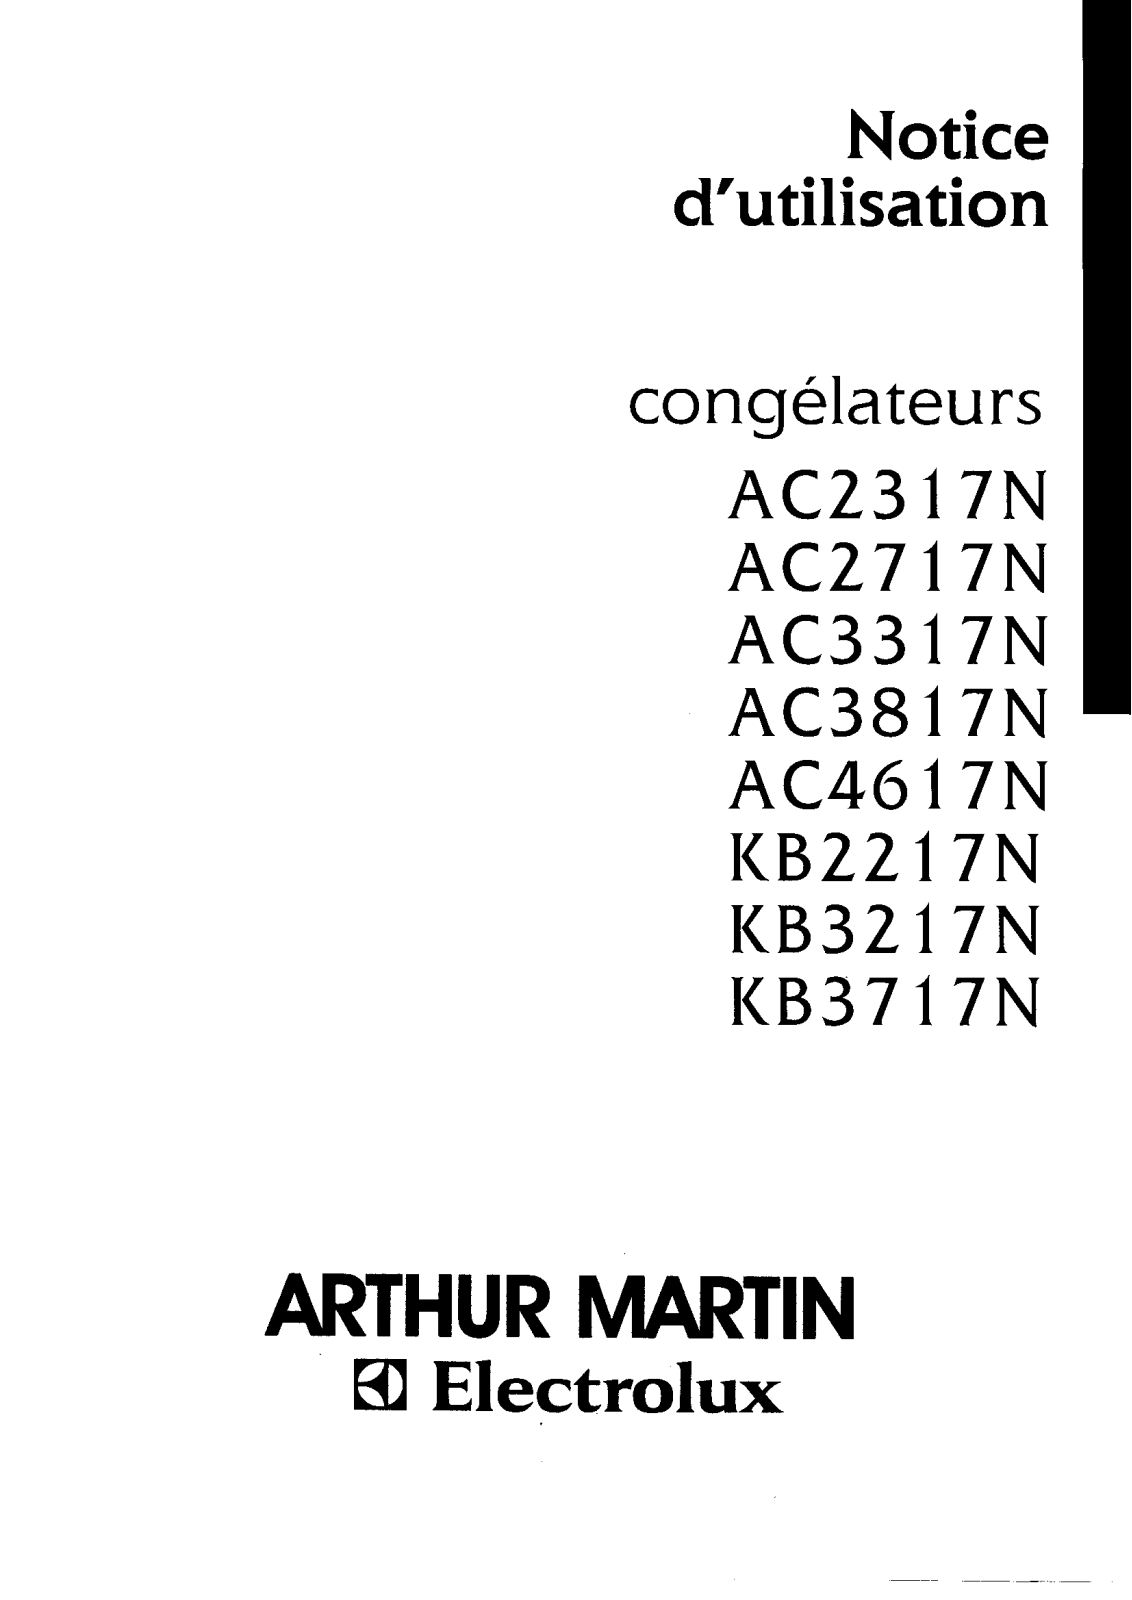 ARTHUR MARTIN AC2317N, KB3217N, AC2717N, AC3317N, AC3817N User Manual